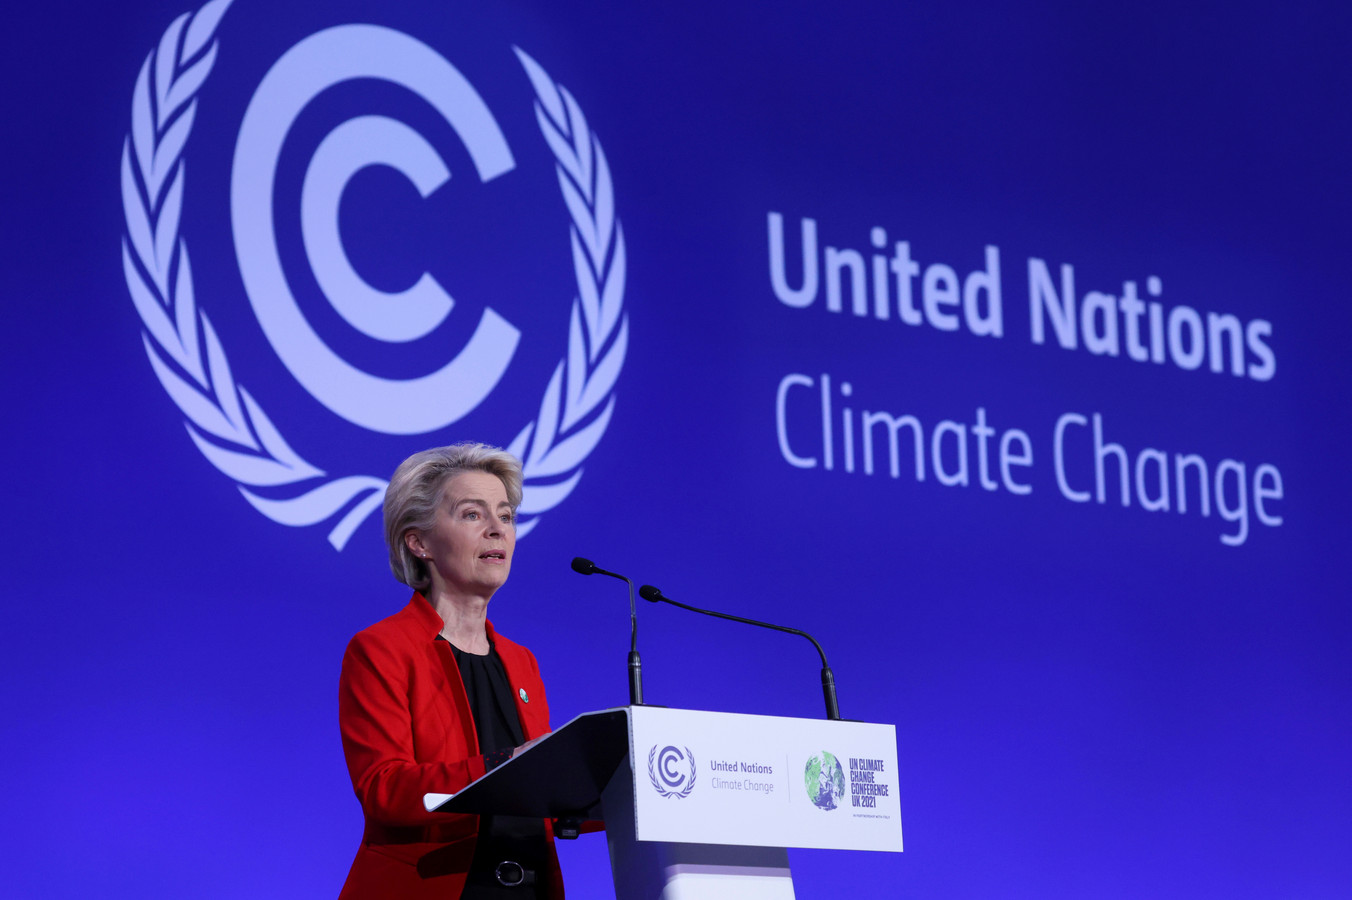 La présidente de la Commission européenne, Ursula von der Leyen, s'exprime lors de la cérémonie d'ouverture de la conférence des Nations unies sur le changement climatique COP26 à Glasgow, en Écosse, lundi 1er novembre 2021.